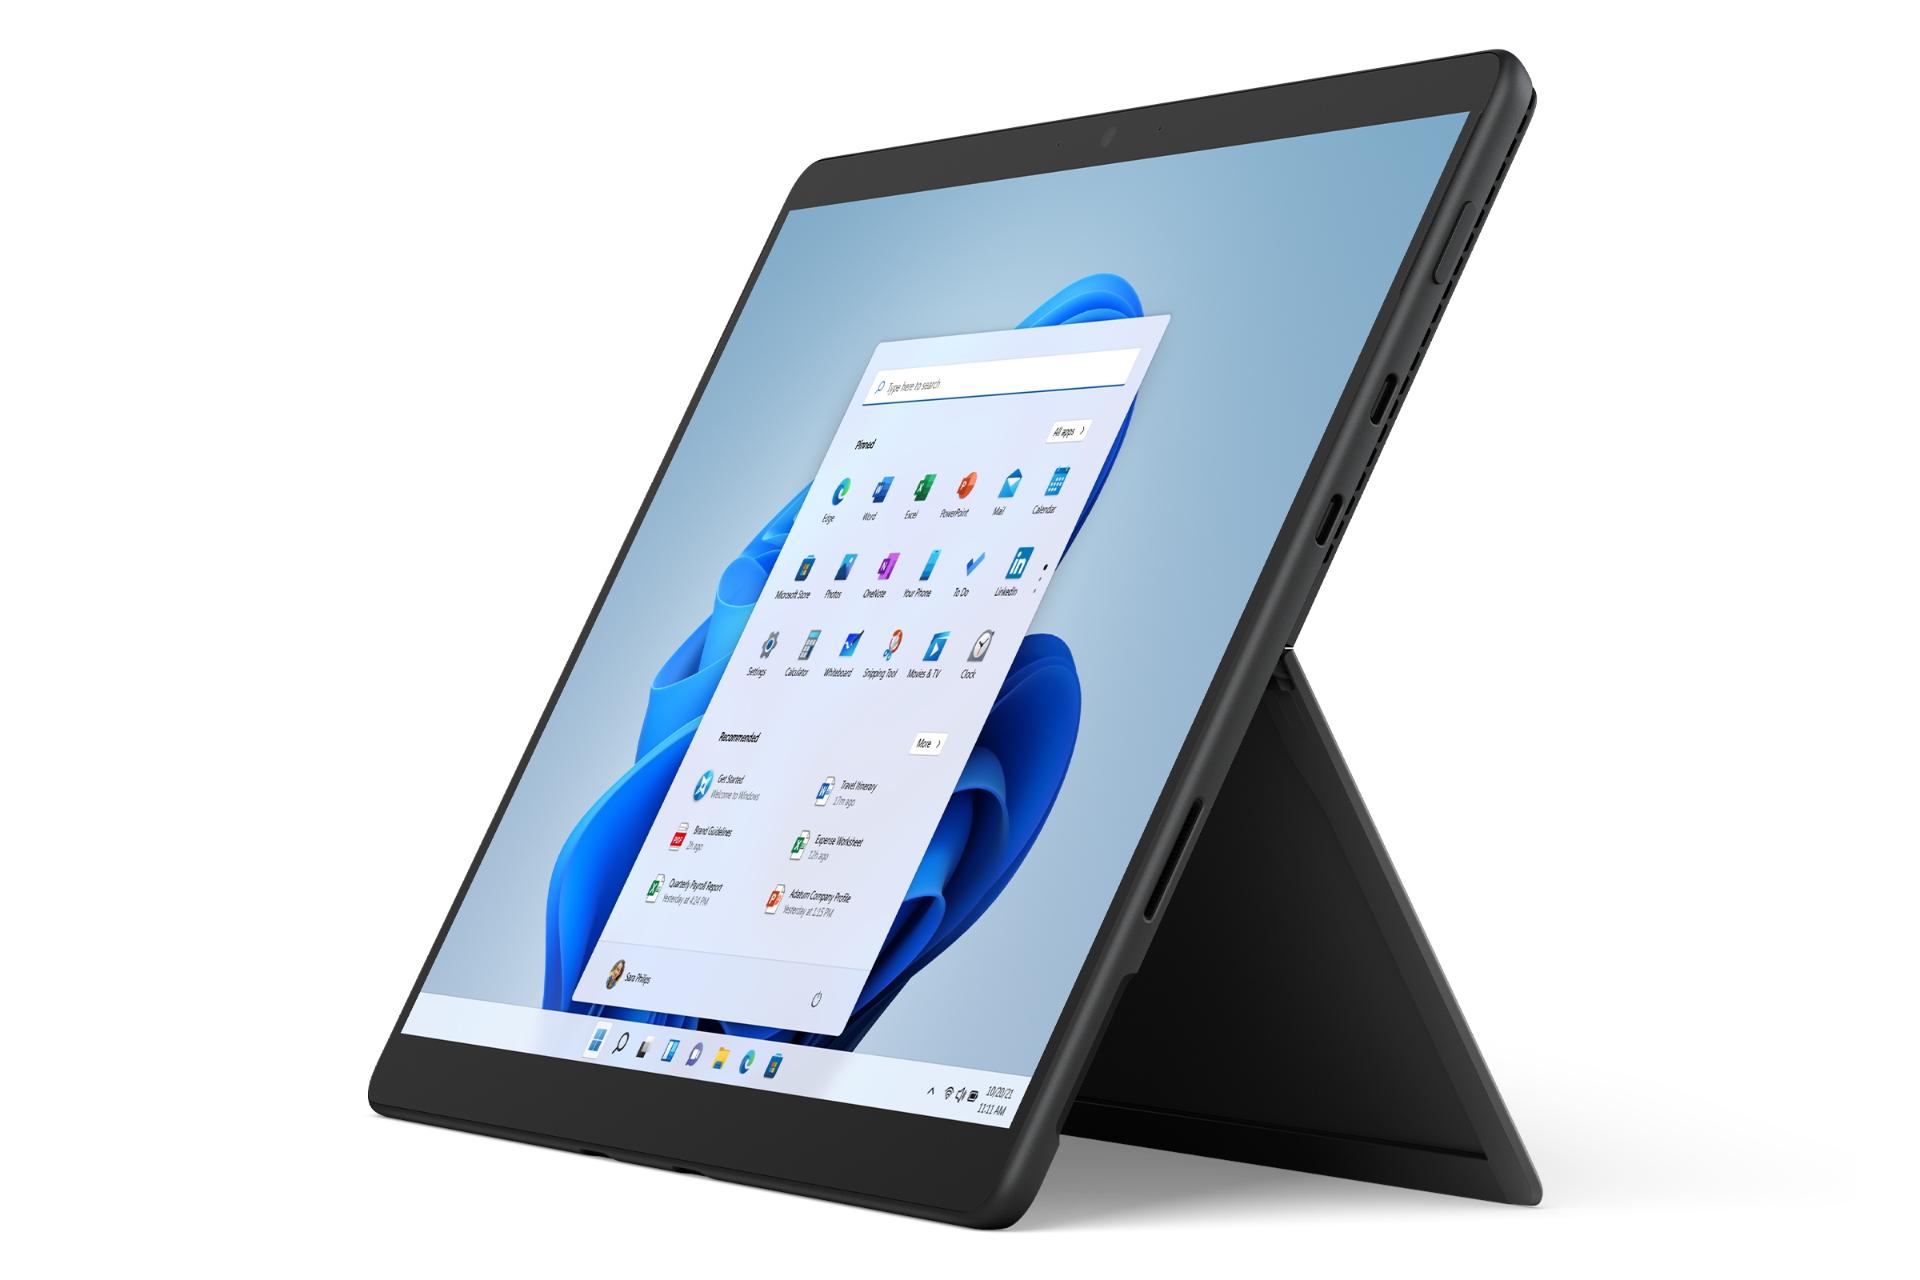 نمای جانبی سرفیس پرو 8 مایکروسافت / Microsoft Surface Pro 8 خاکستری